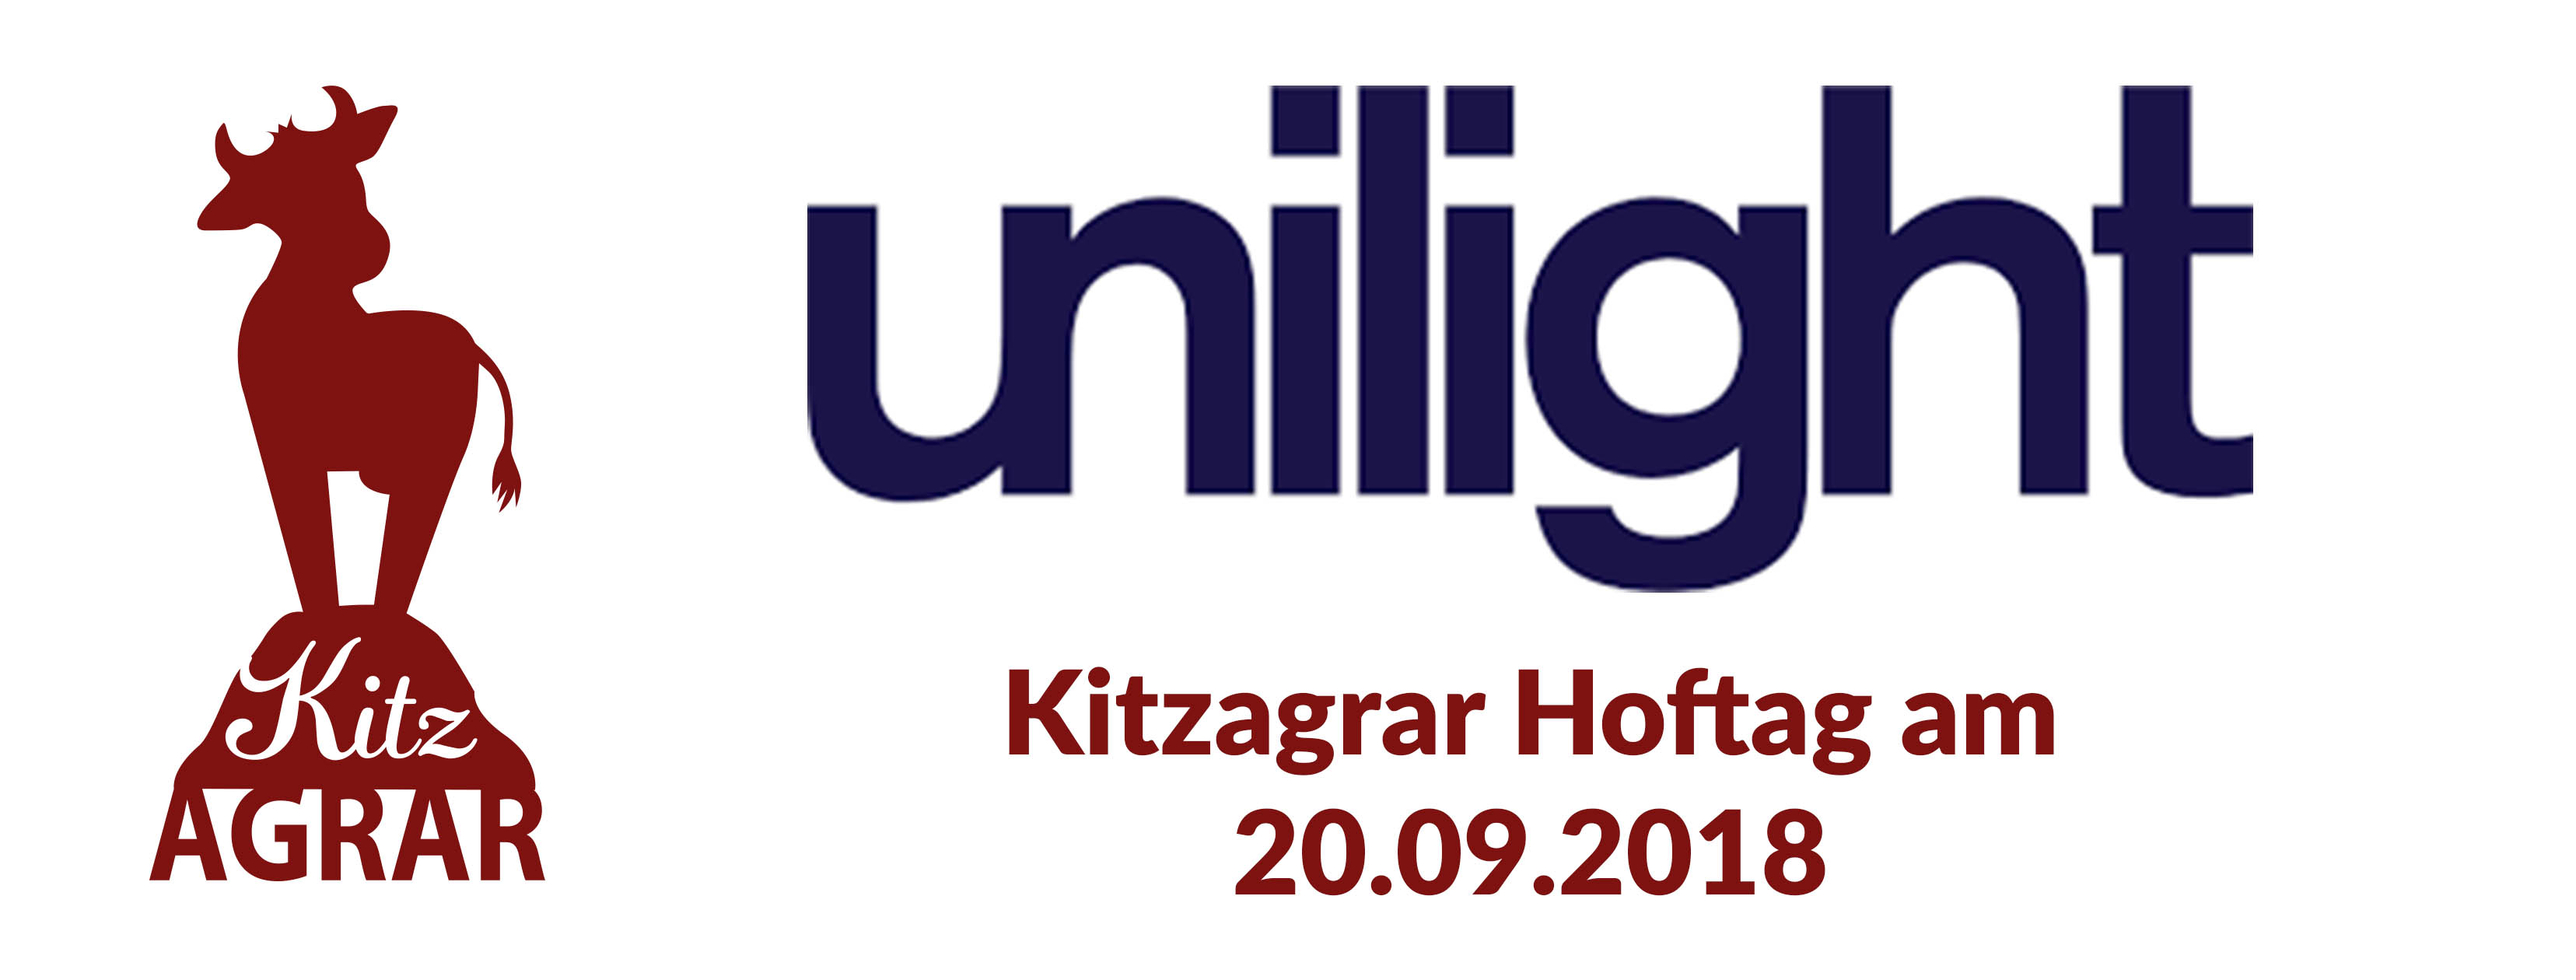 Unilight_Hoftag.jpg